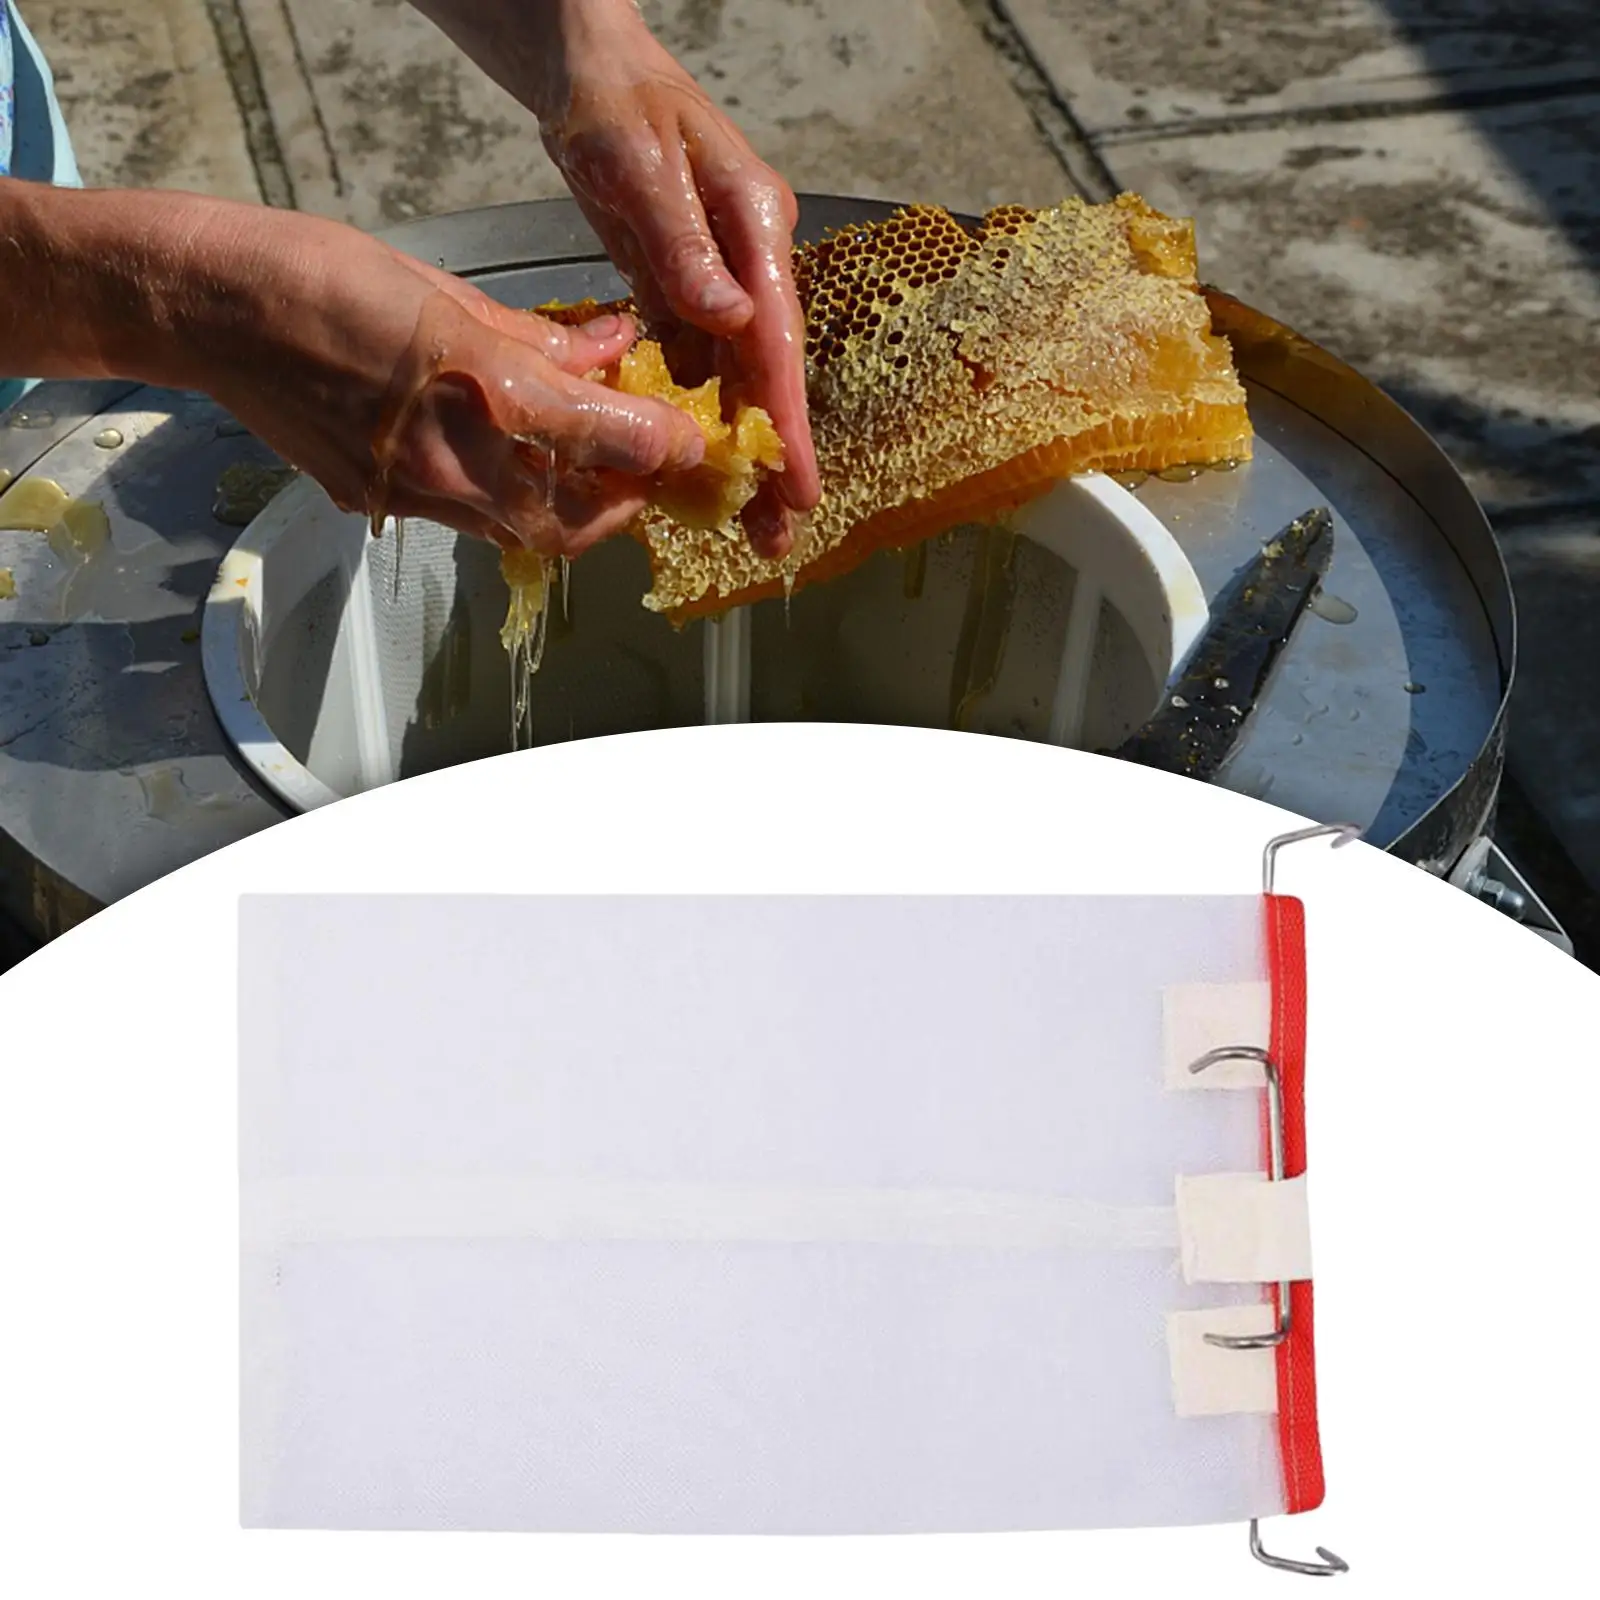  Filter Bag, Food Fondant Filter  Bags Strainer for Apiculture